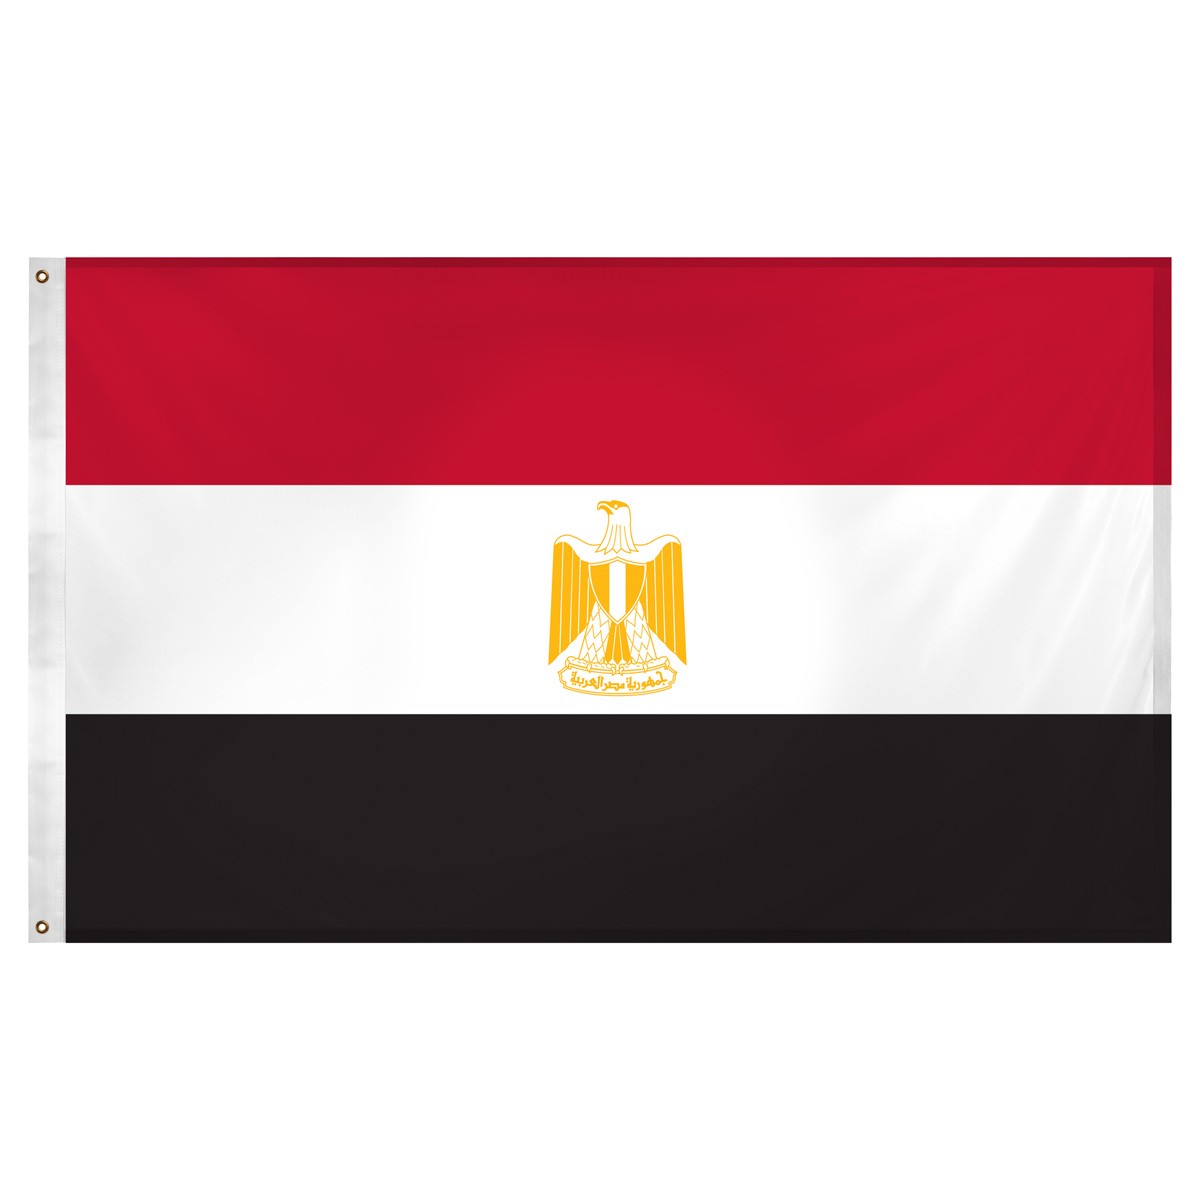 Egypt Table Flag